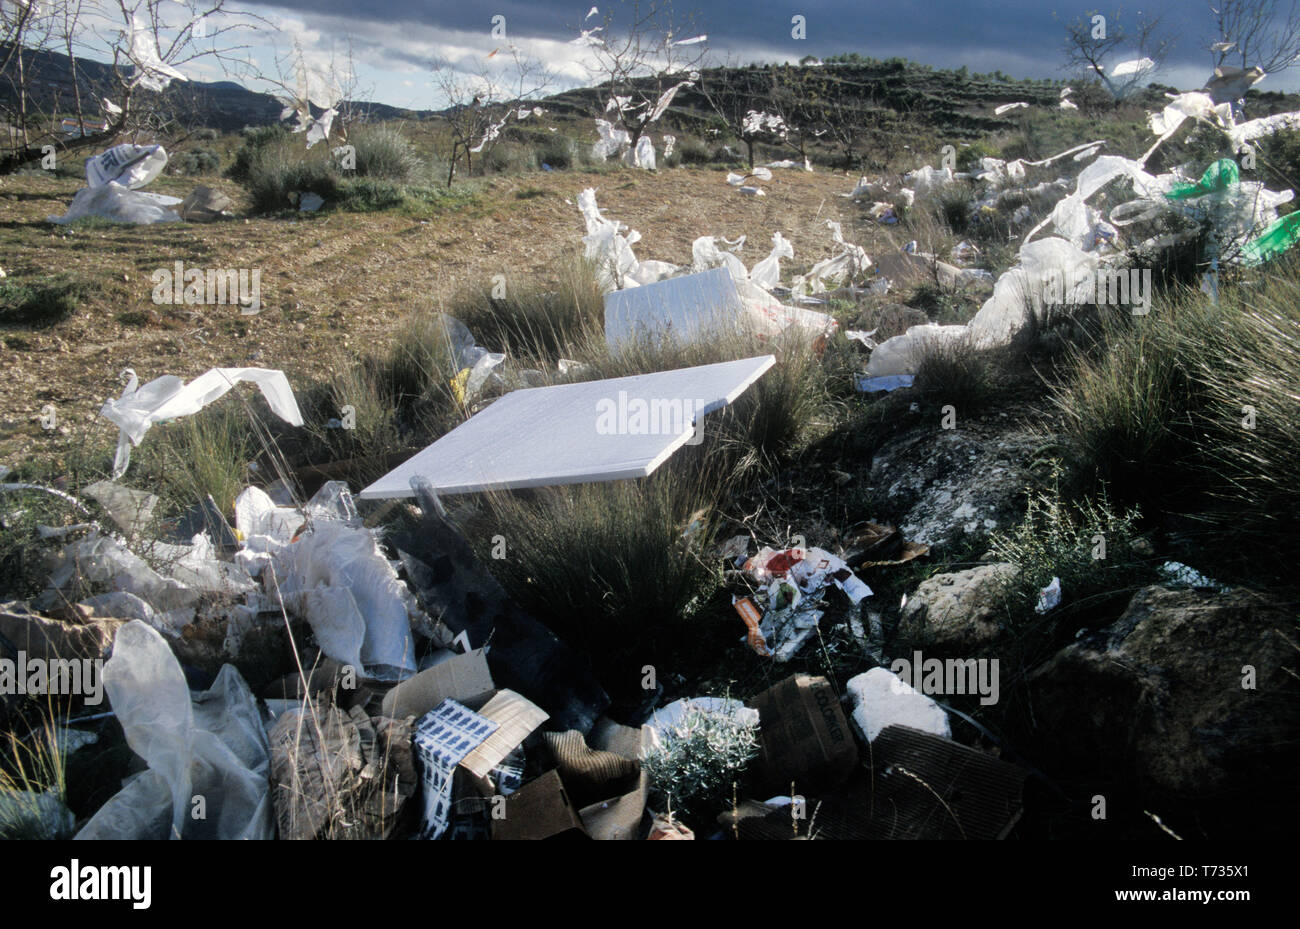 Le materie plastiche e i rifiuti depositati in campagna spagnola, elche de la Sierra, Castilla la Mancha, in Spagna Foto Stock